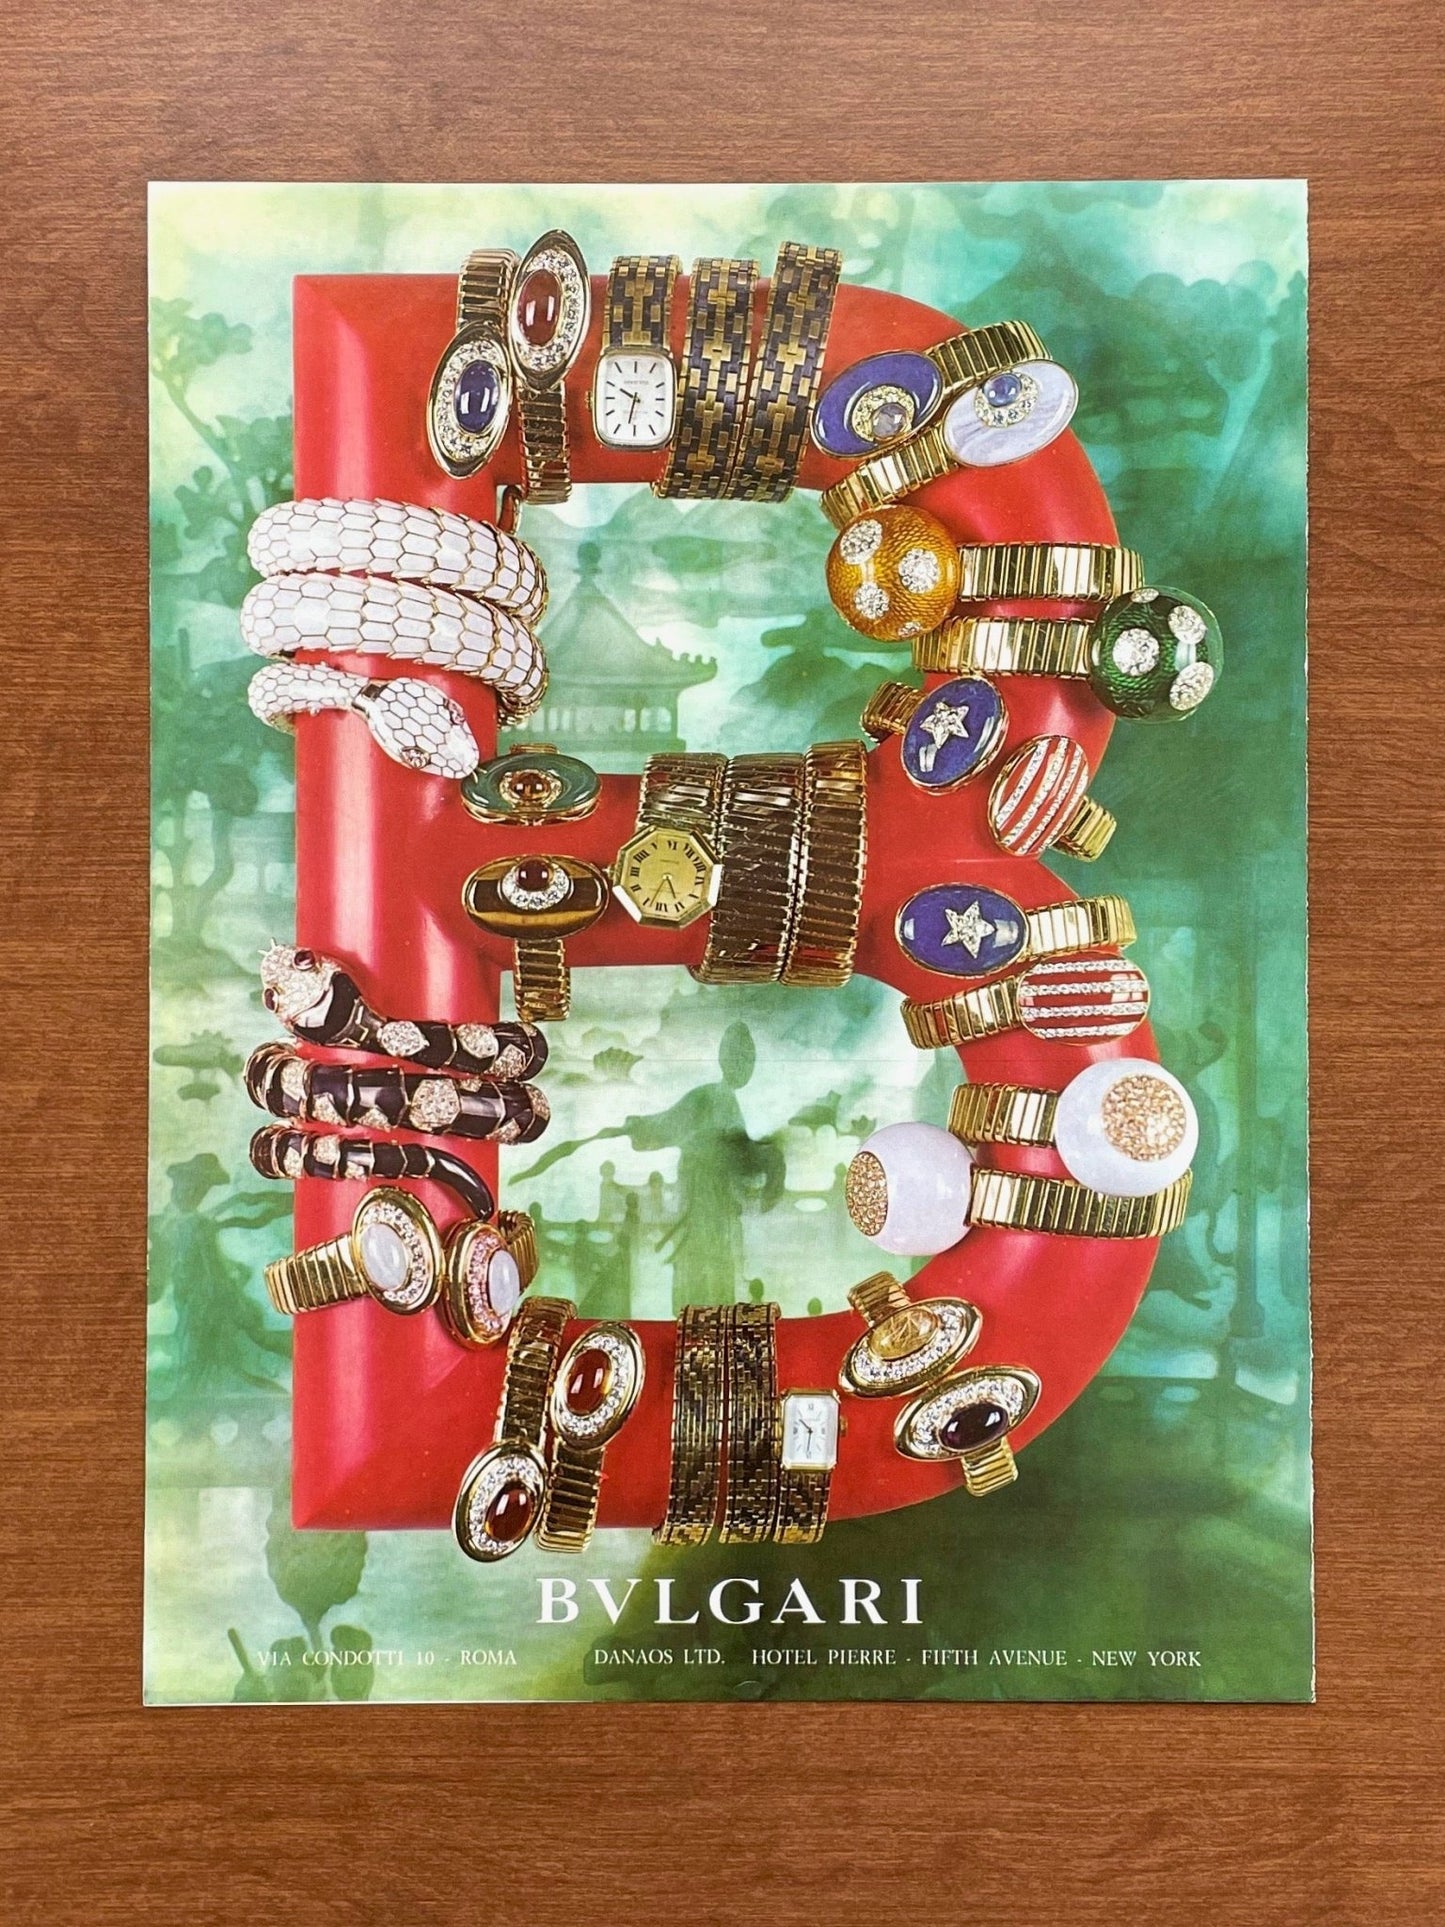 1971 Bvlgari Serpenti Watches & Jewelry Advertisement